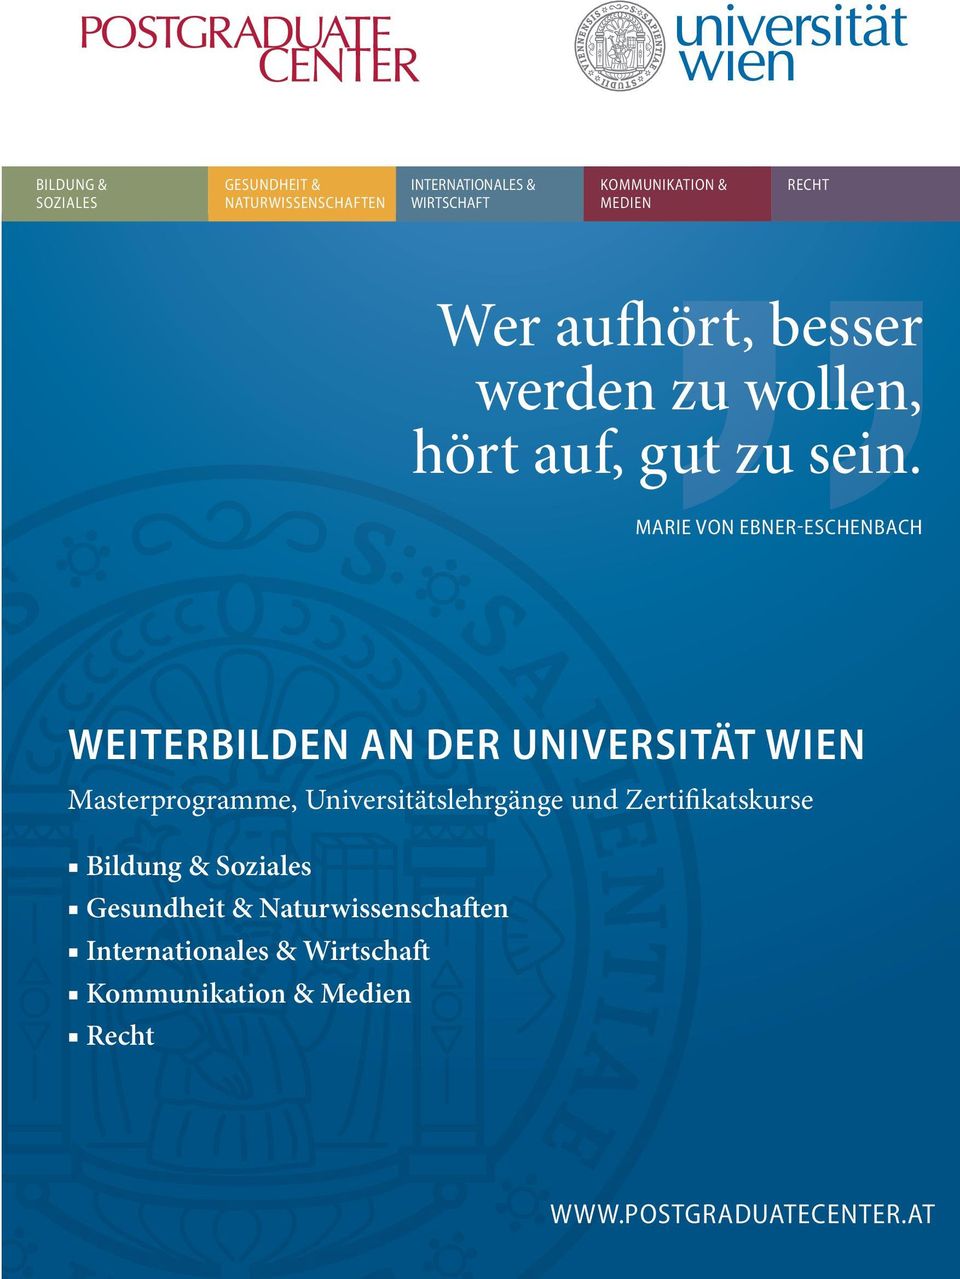 Marie von ebner-eschenbach WEITERBILDEN AN DER UNIVERSITÄT WIEN Masterprogramme, Universitätslehrgänge und